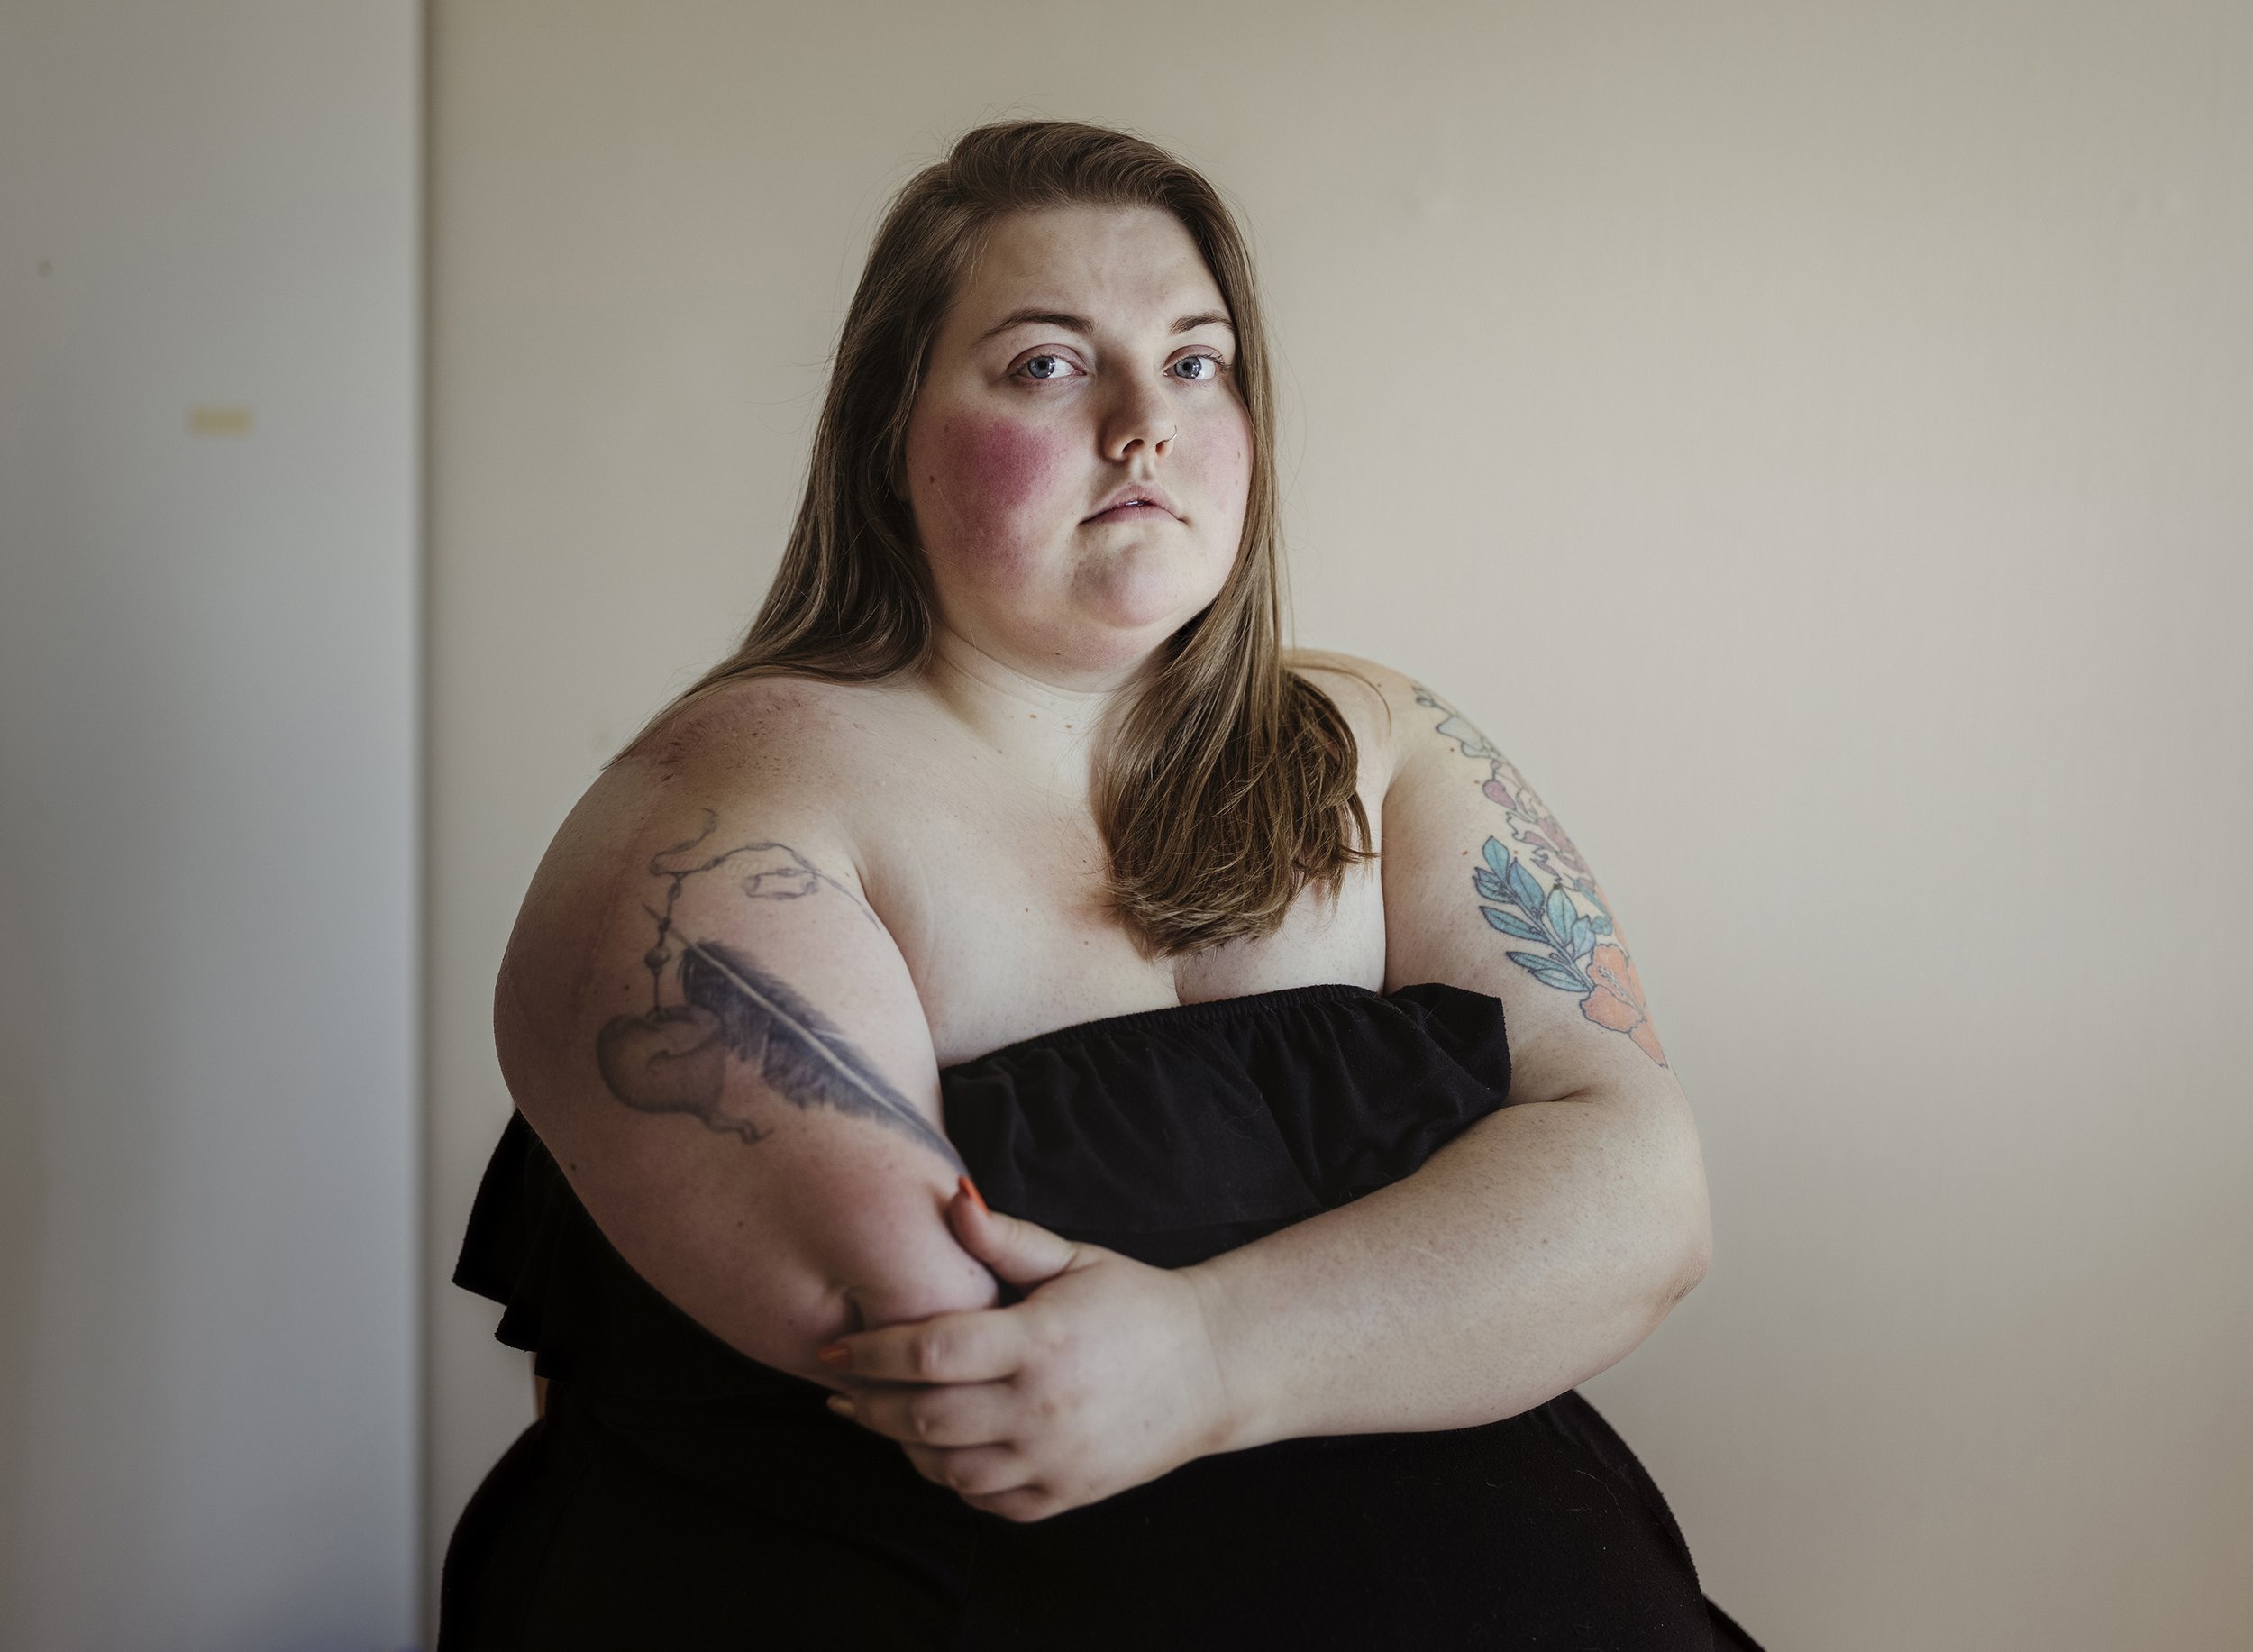 Sex Deform Fat Woman